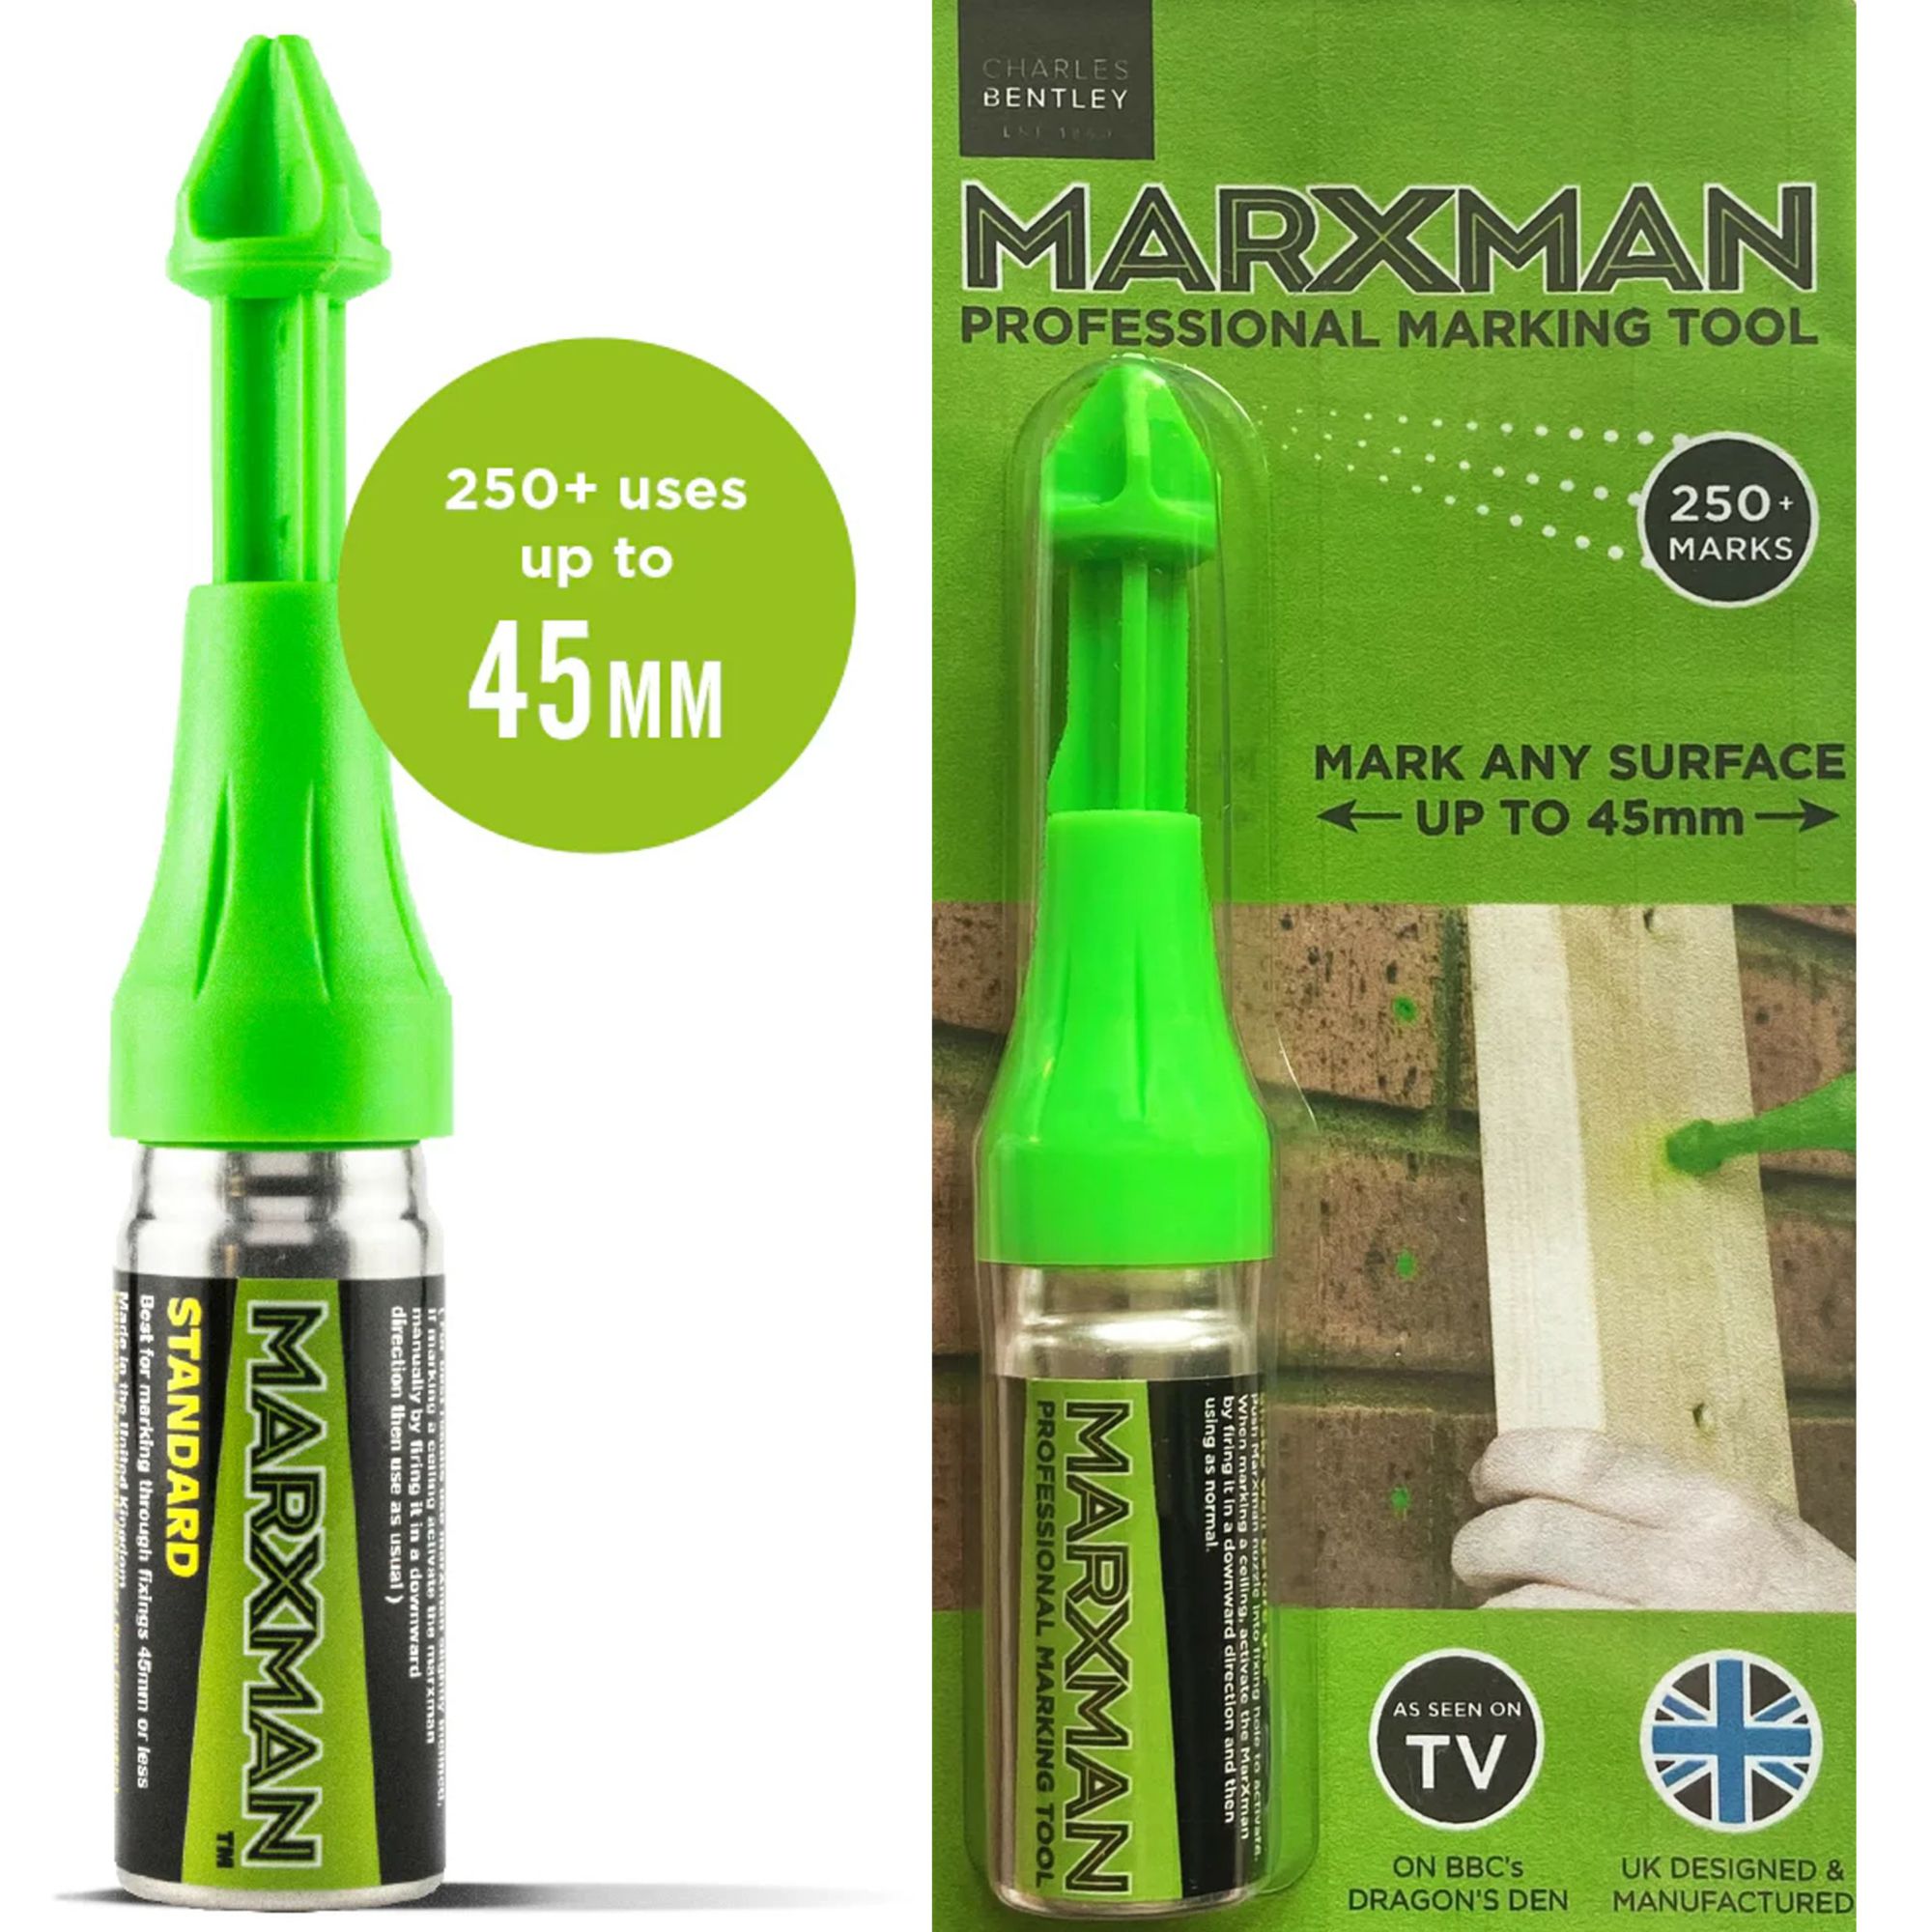 Marxman Professional Marking Tool MRXSTD1GRN at Wades (Appliance